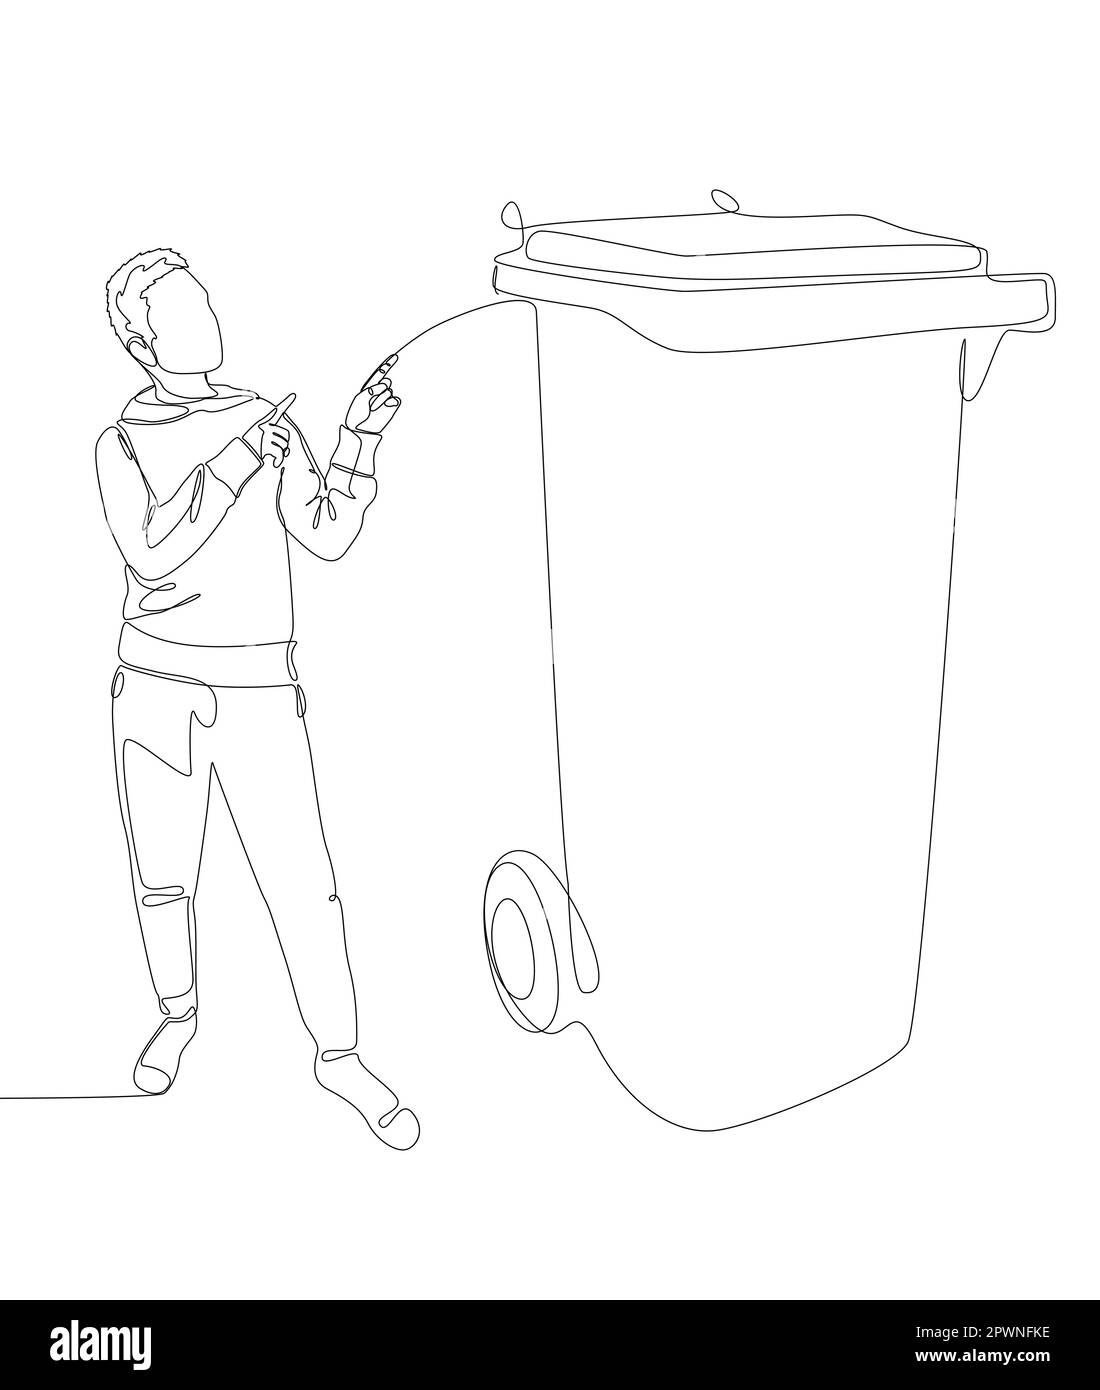 Eine durchgehende Linie von Mann, der mit dem Finger auf den Müllcontainer zeigt. Vektorkonzept zur Darstellung dünner Linien. Kontur Zeichnen kreativer Ideen. Stock Vektor